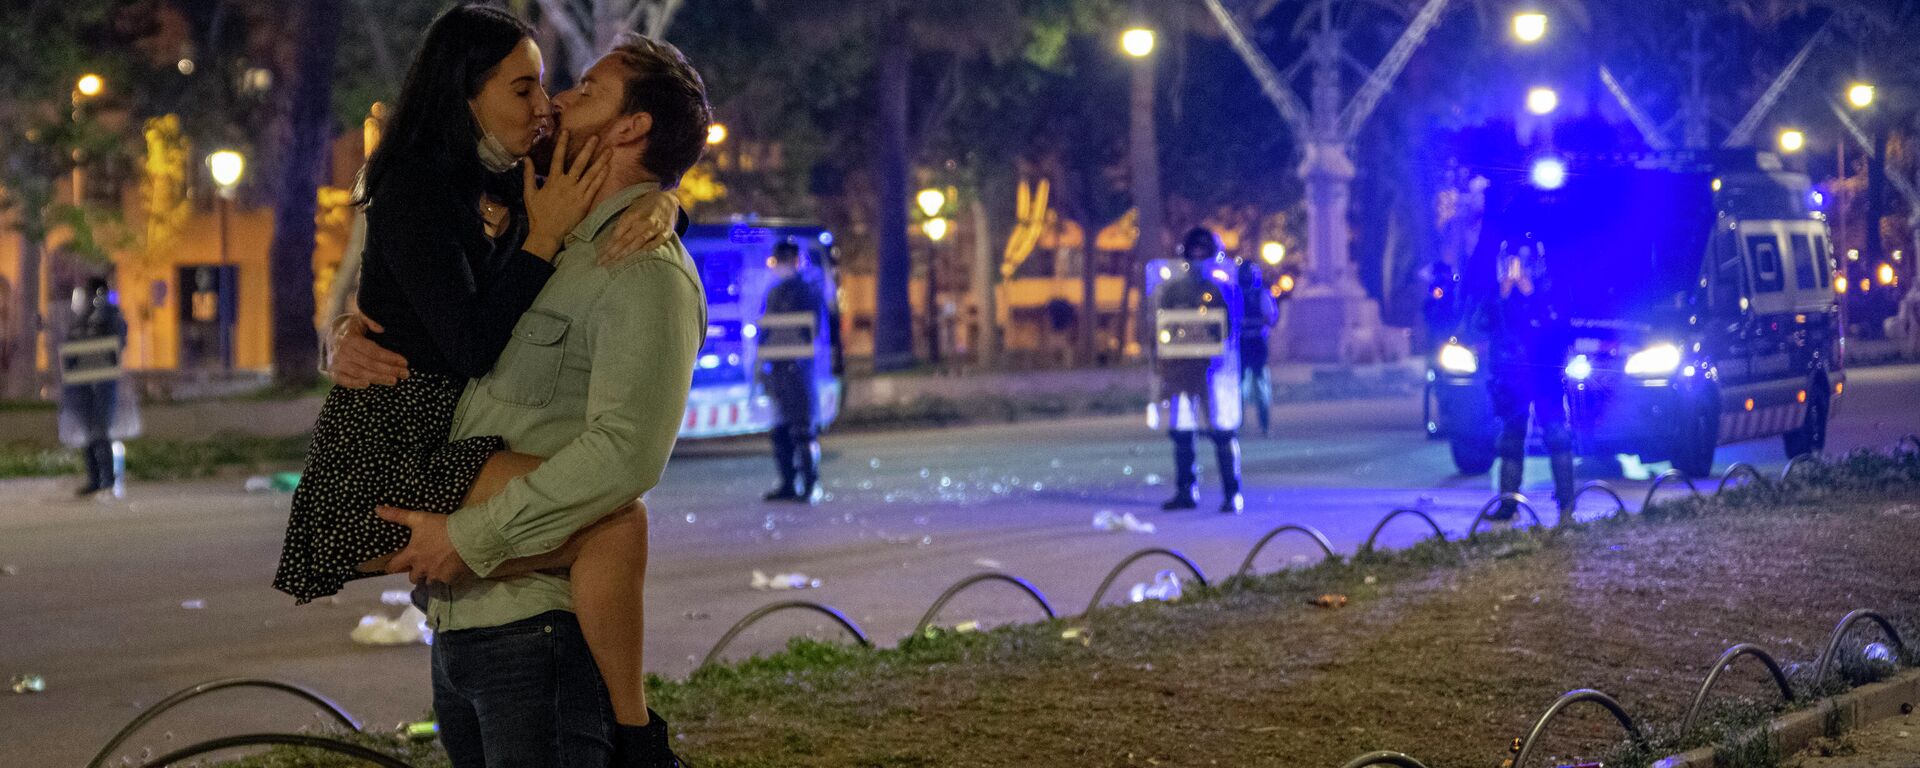 Una pareja se besa en una céntrica calle de Barcelona durante la primera noche sin el estado de alarma - Sputnik Mundo, 1920, 02.09.2021